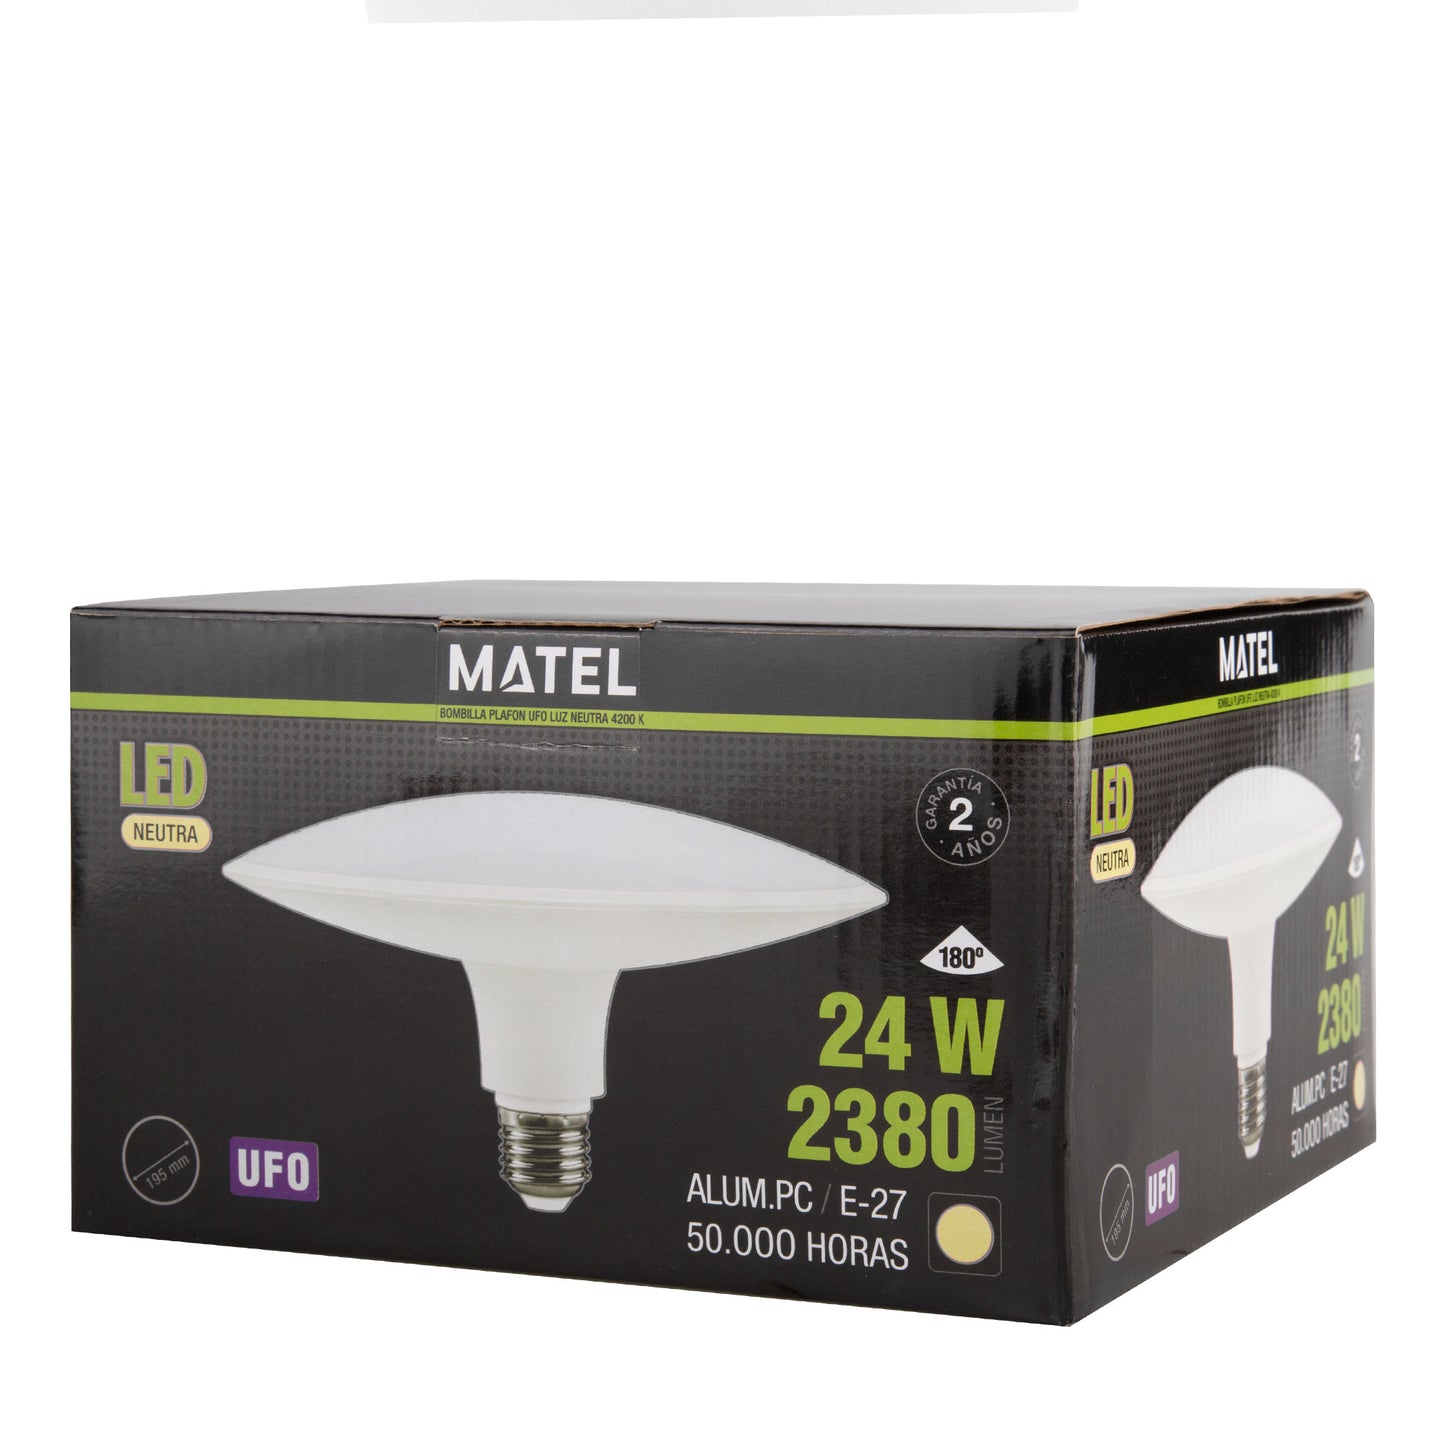 UFO LED LAMP E40 80W 100W E27 24W 230V AC 